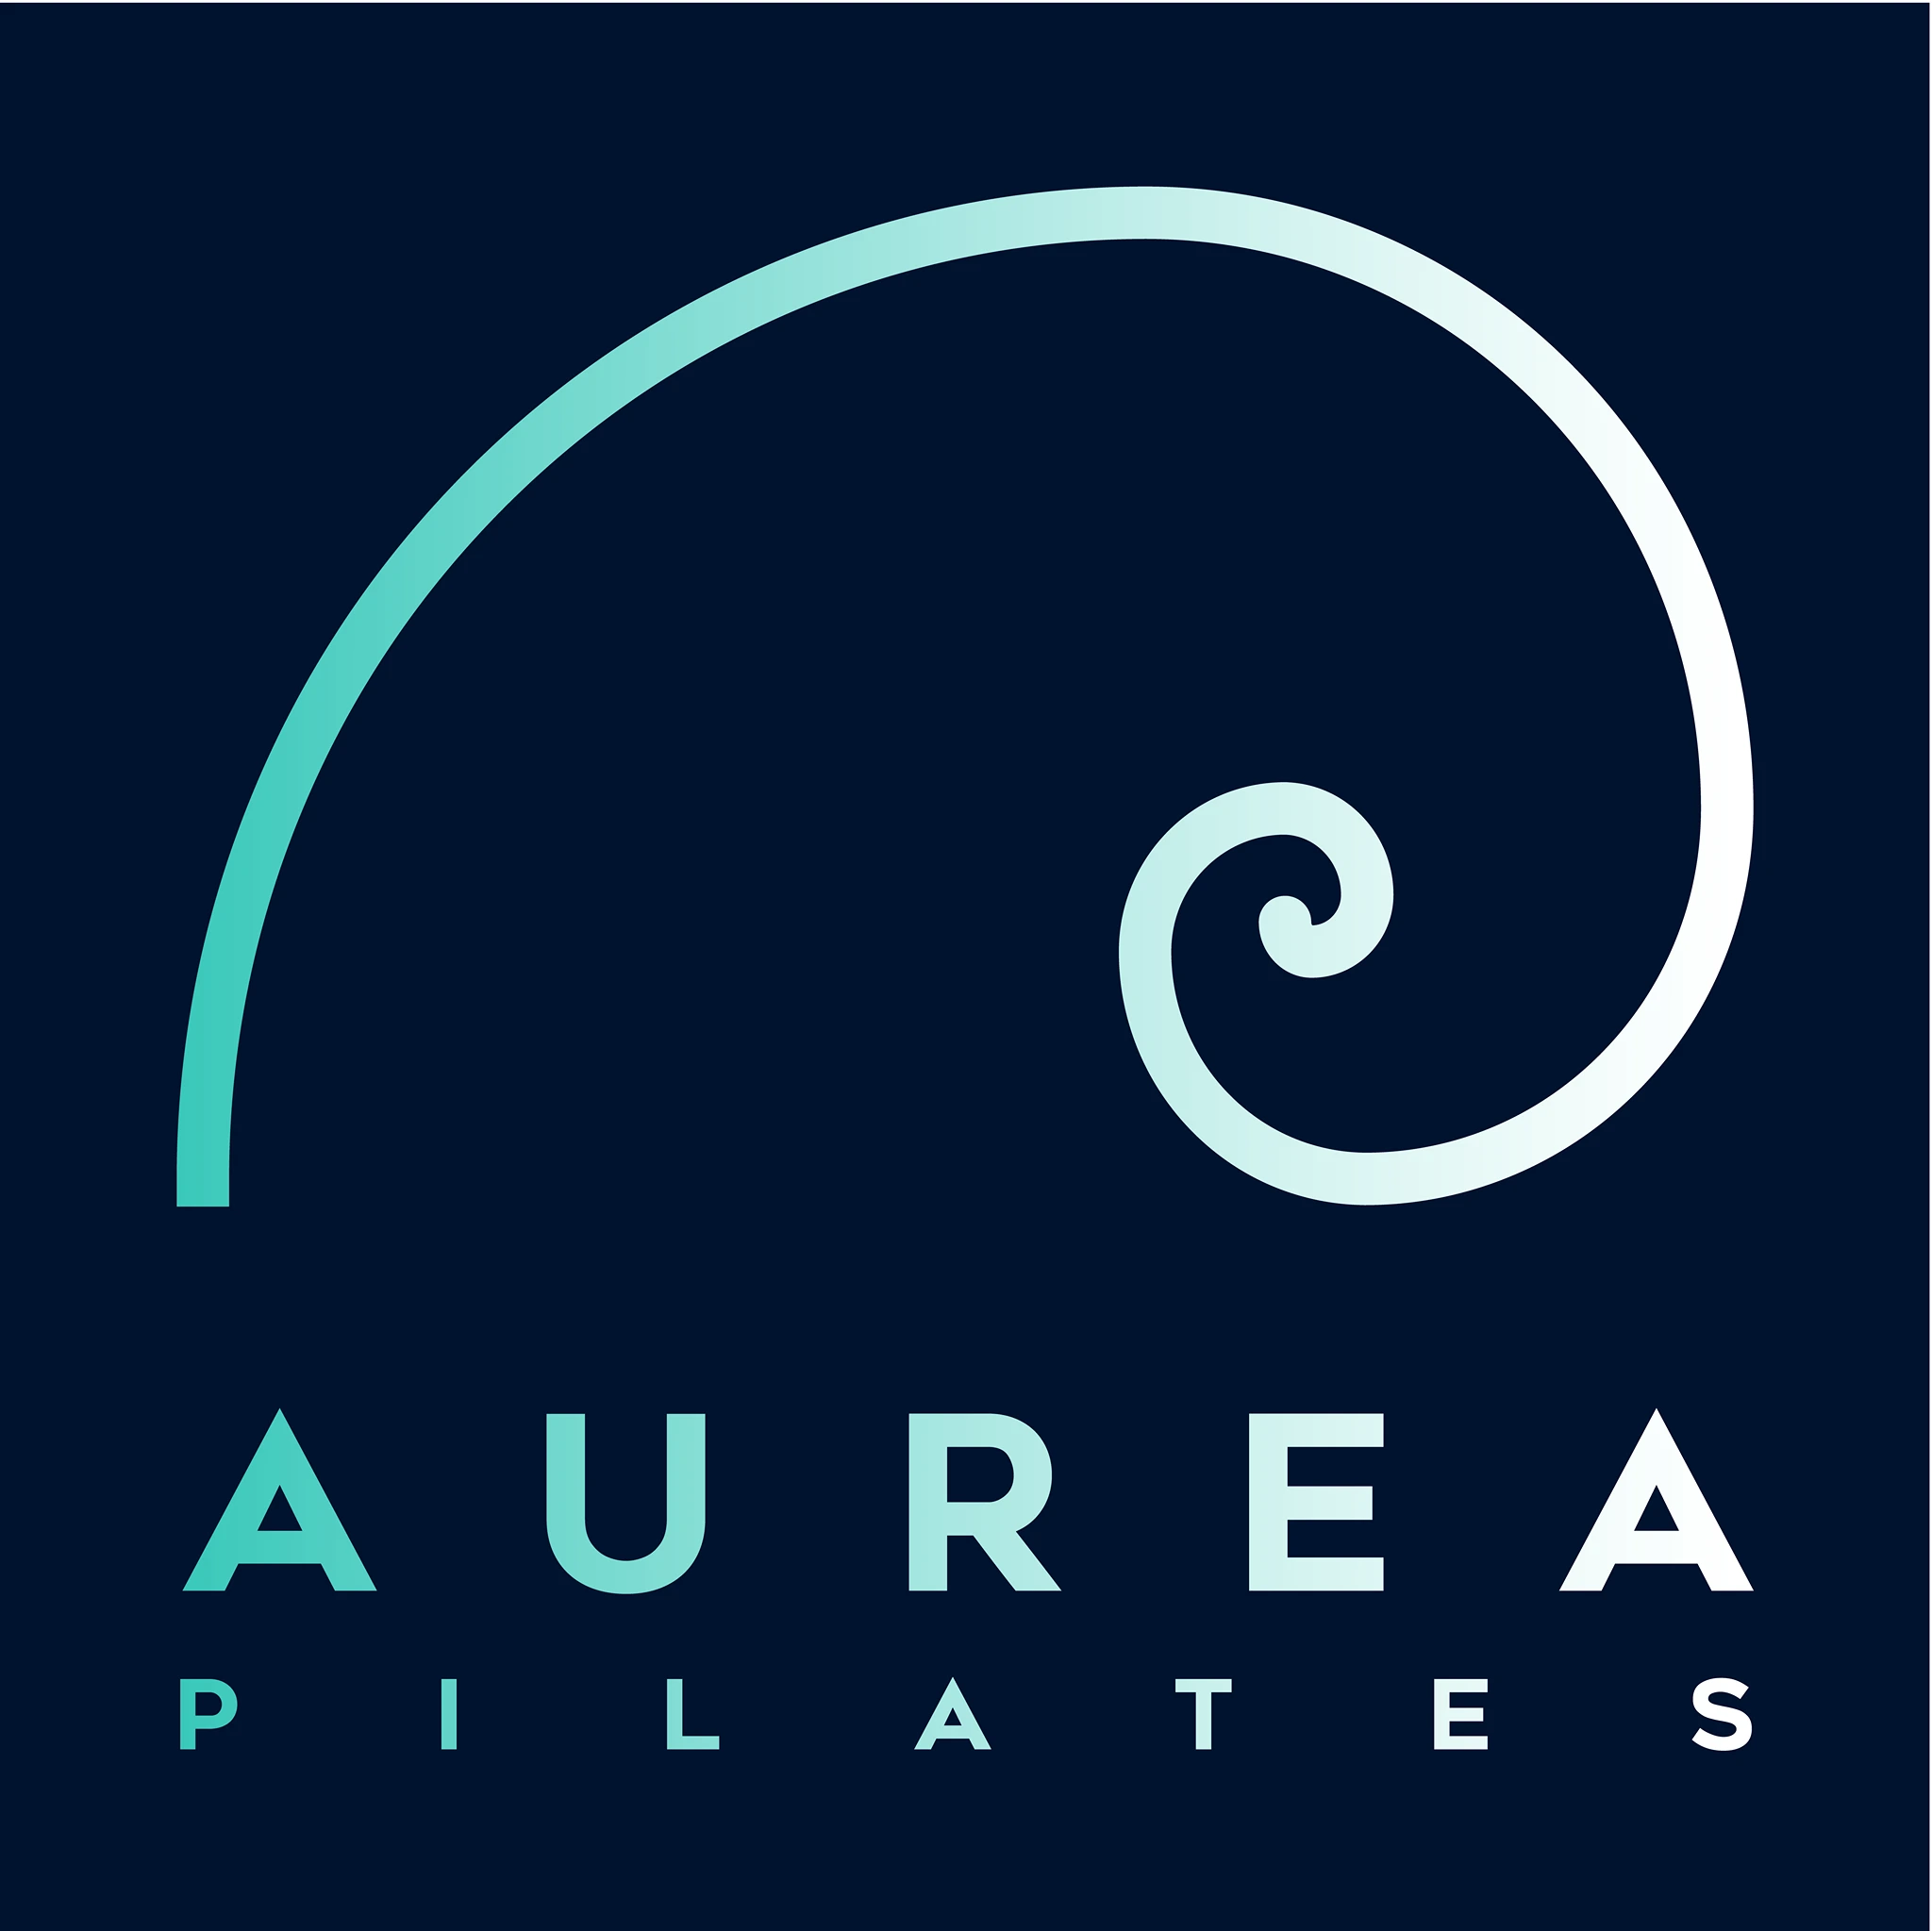 Aurea Pilates